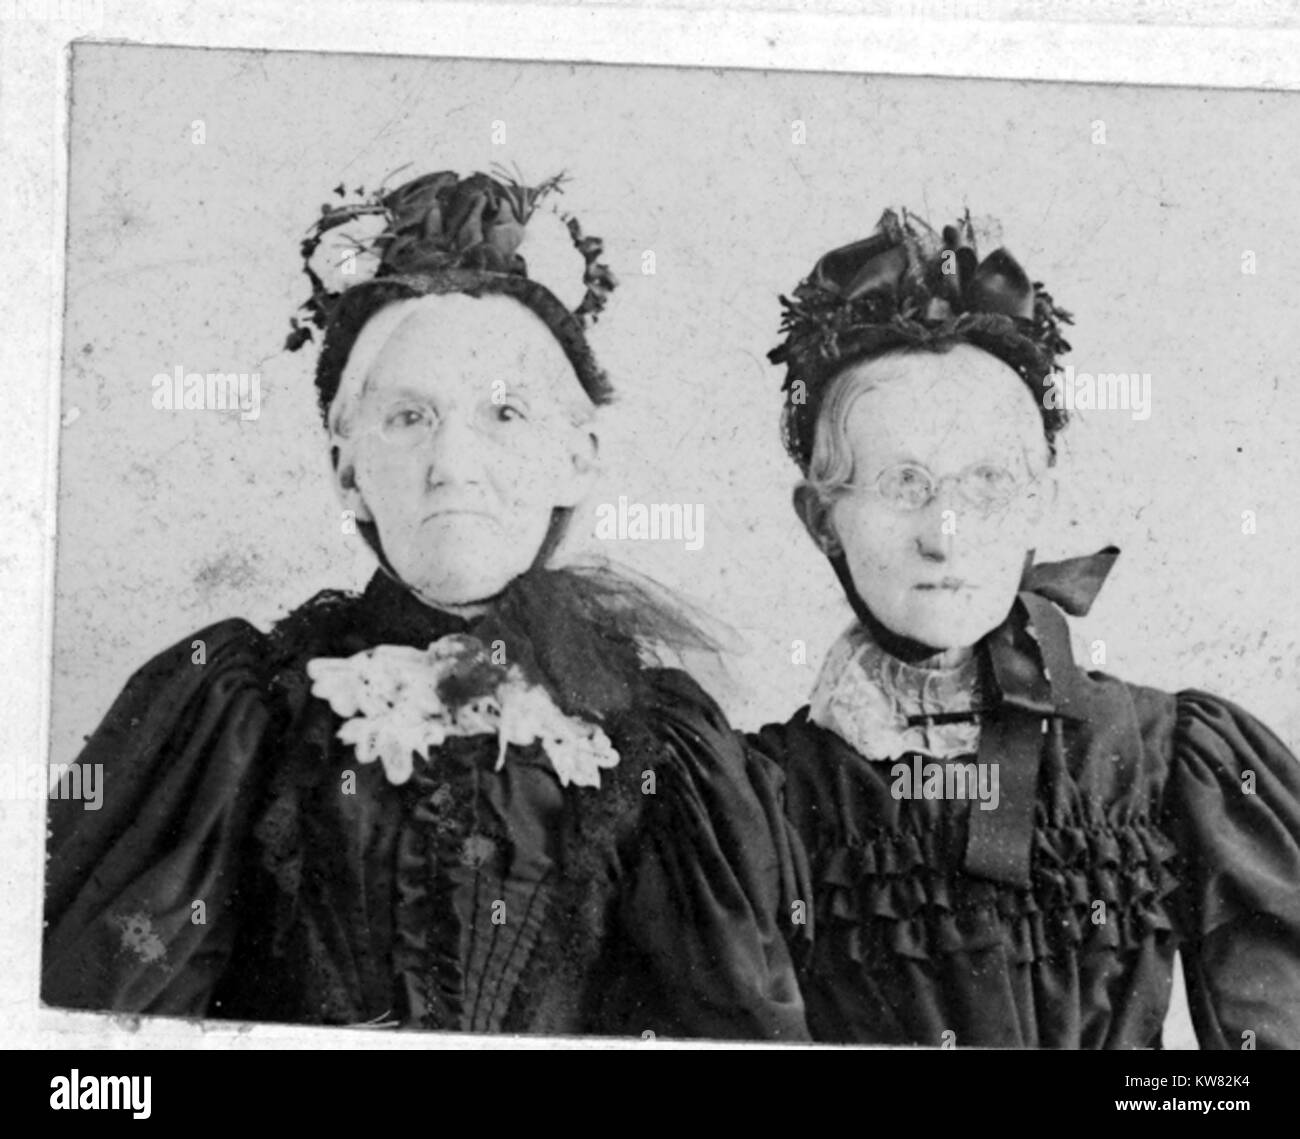 Vita ritratto di Elisabetta Emery cancelli, nonna di Bess Truman, e una donna non identificato, 1910. Immagine cortesia archivi nazionali. Foto Stock